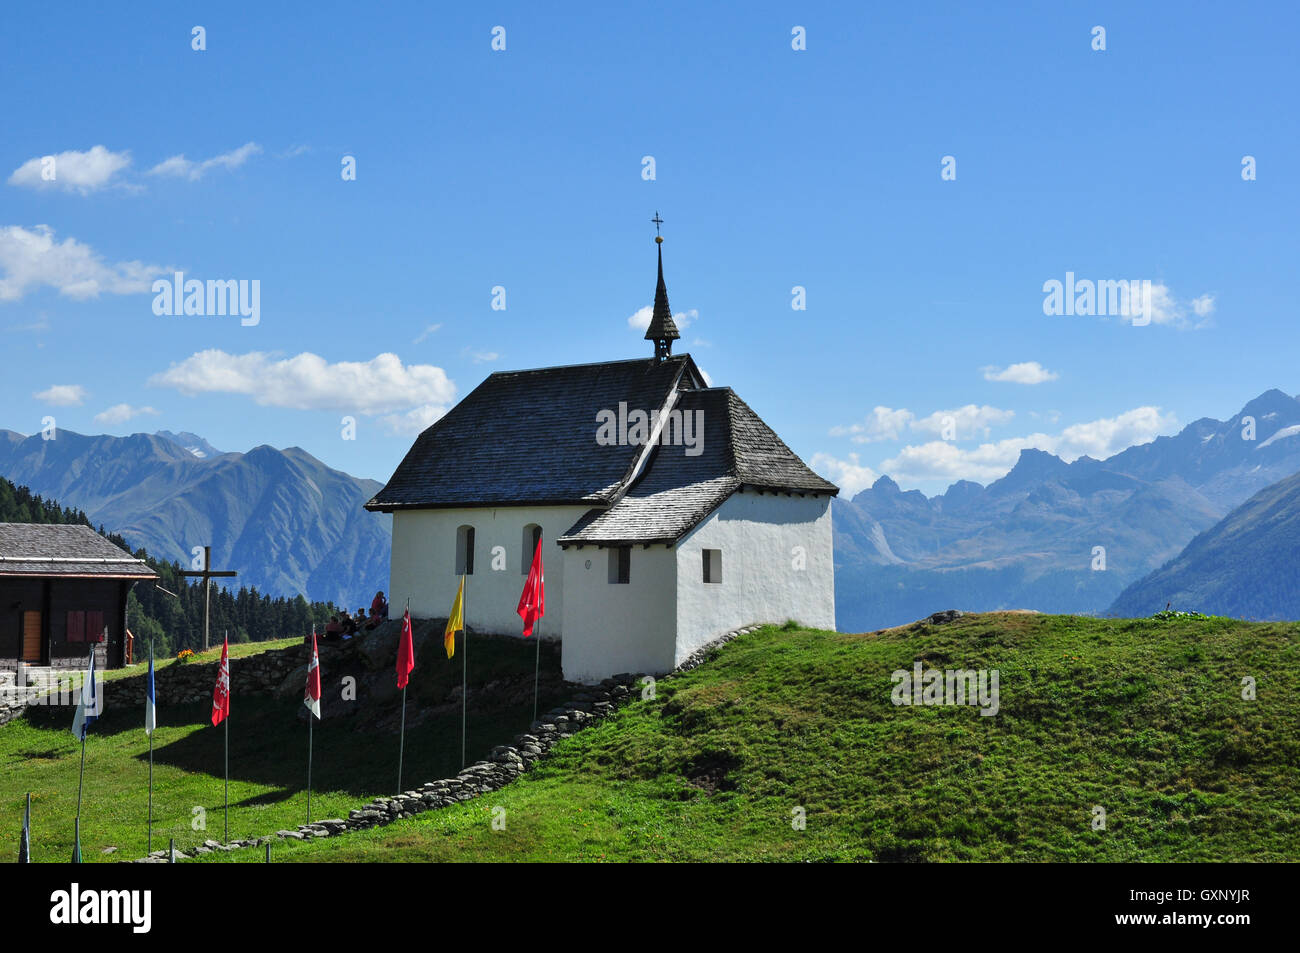 Bettmeralp church in the Swiss Alps, Valais, Switzerland Stock Photo